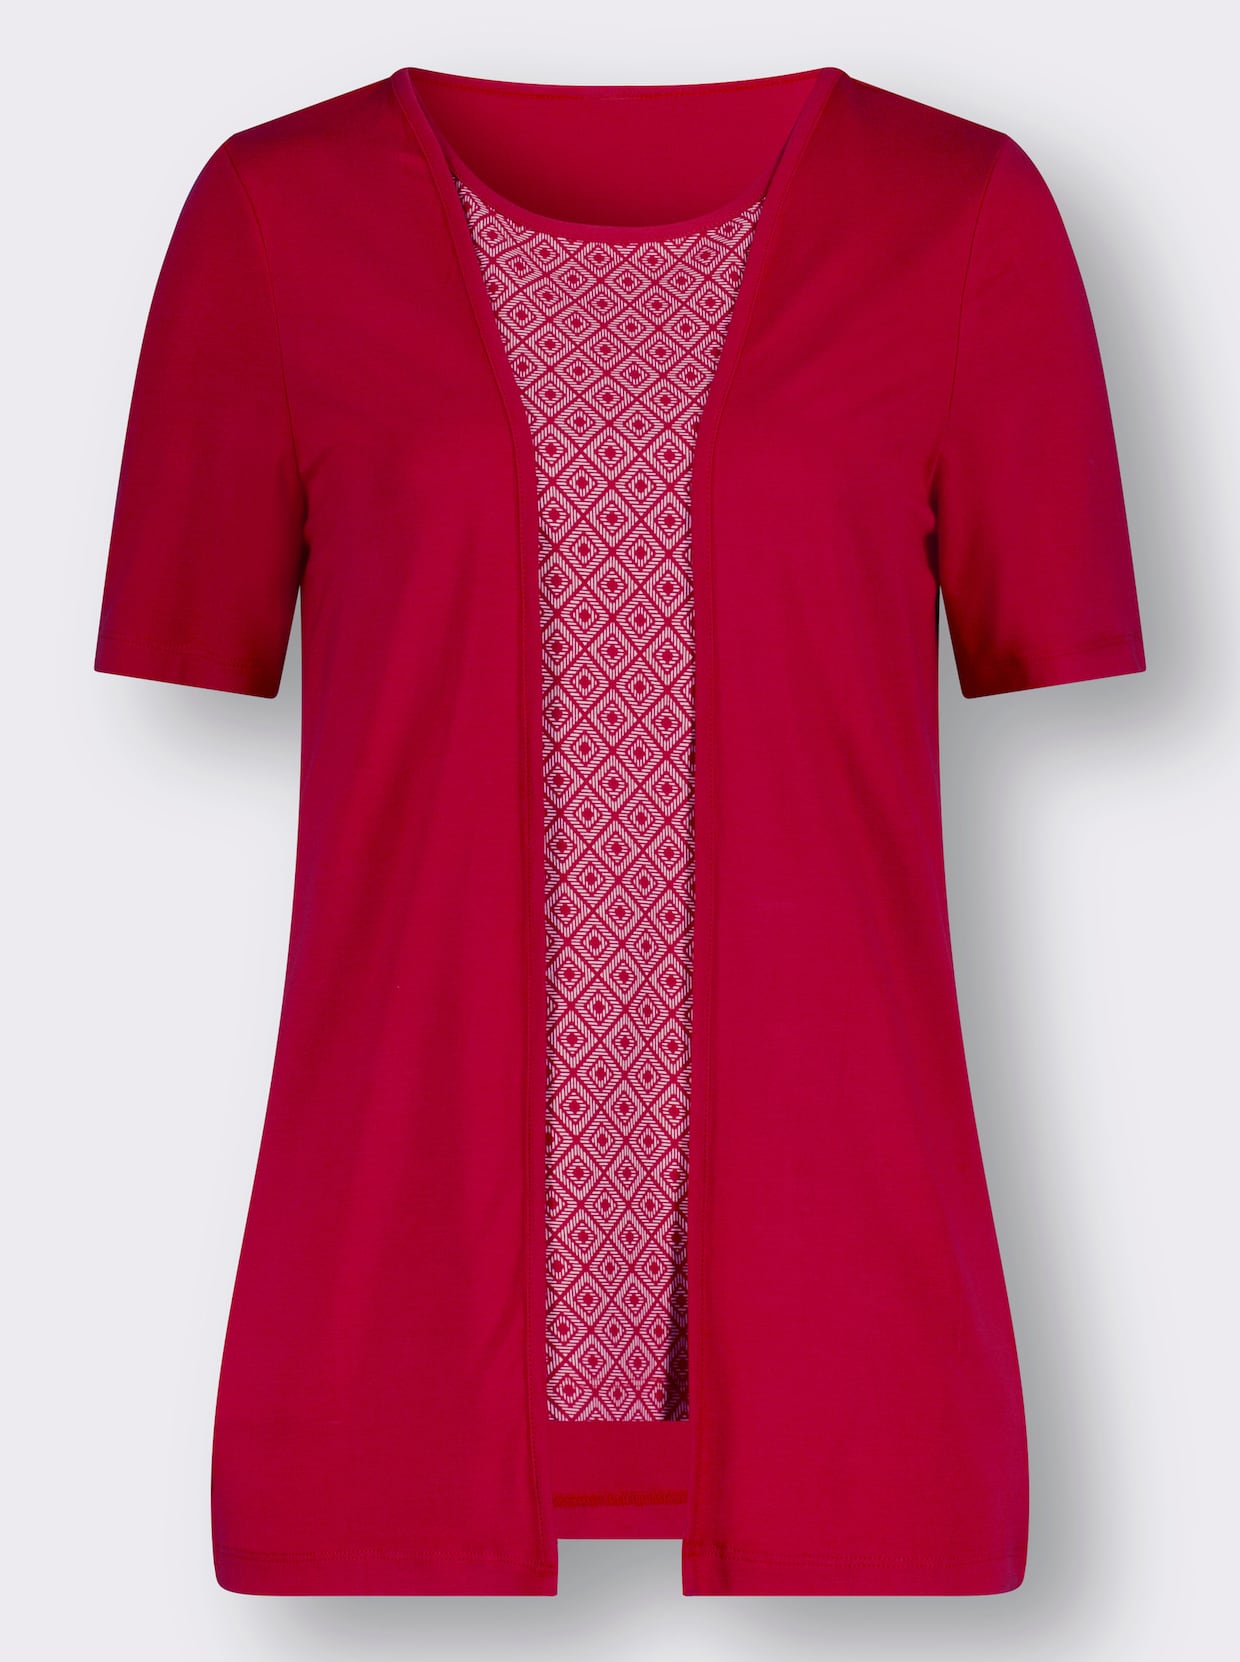 Tričko z twinsetu - Červená + červeno-biela potlač